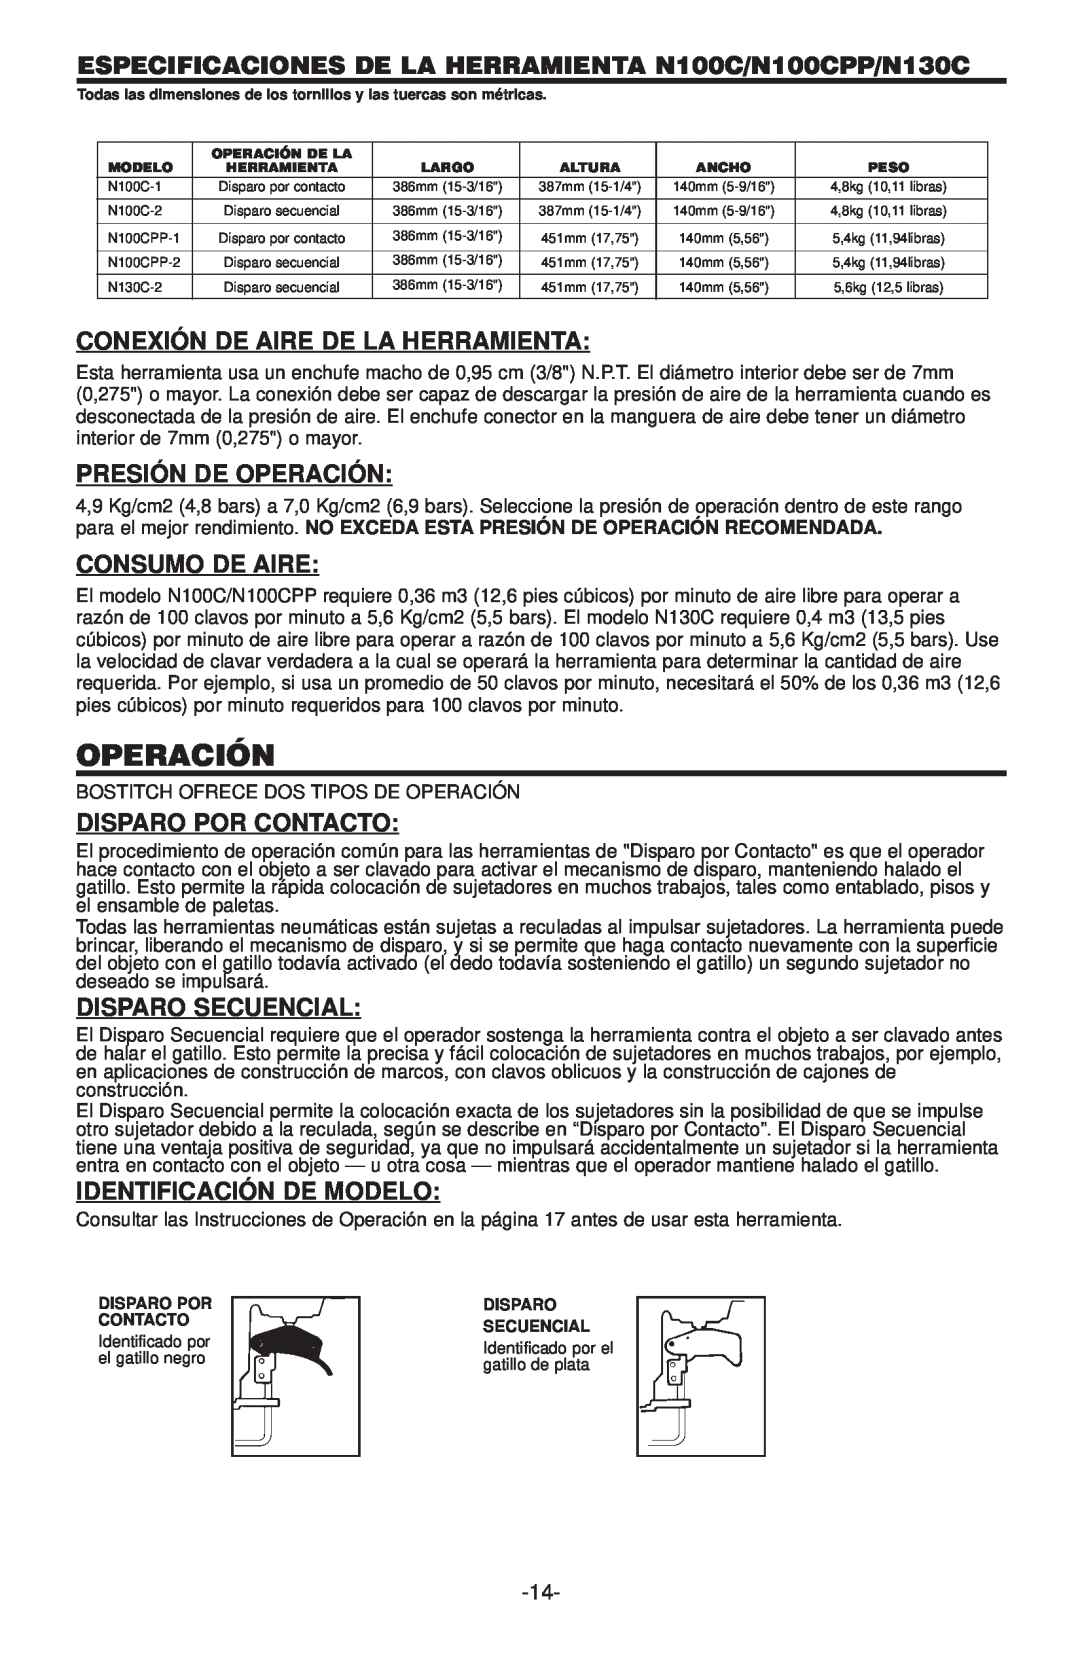 Bostitch ESPECIFICACIONES DE LA HERRAMIENTA N100C/N100CPP/N130C, Conexión De Aire De La Herramienta, Consumo De Aire 